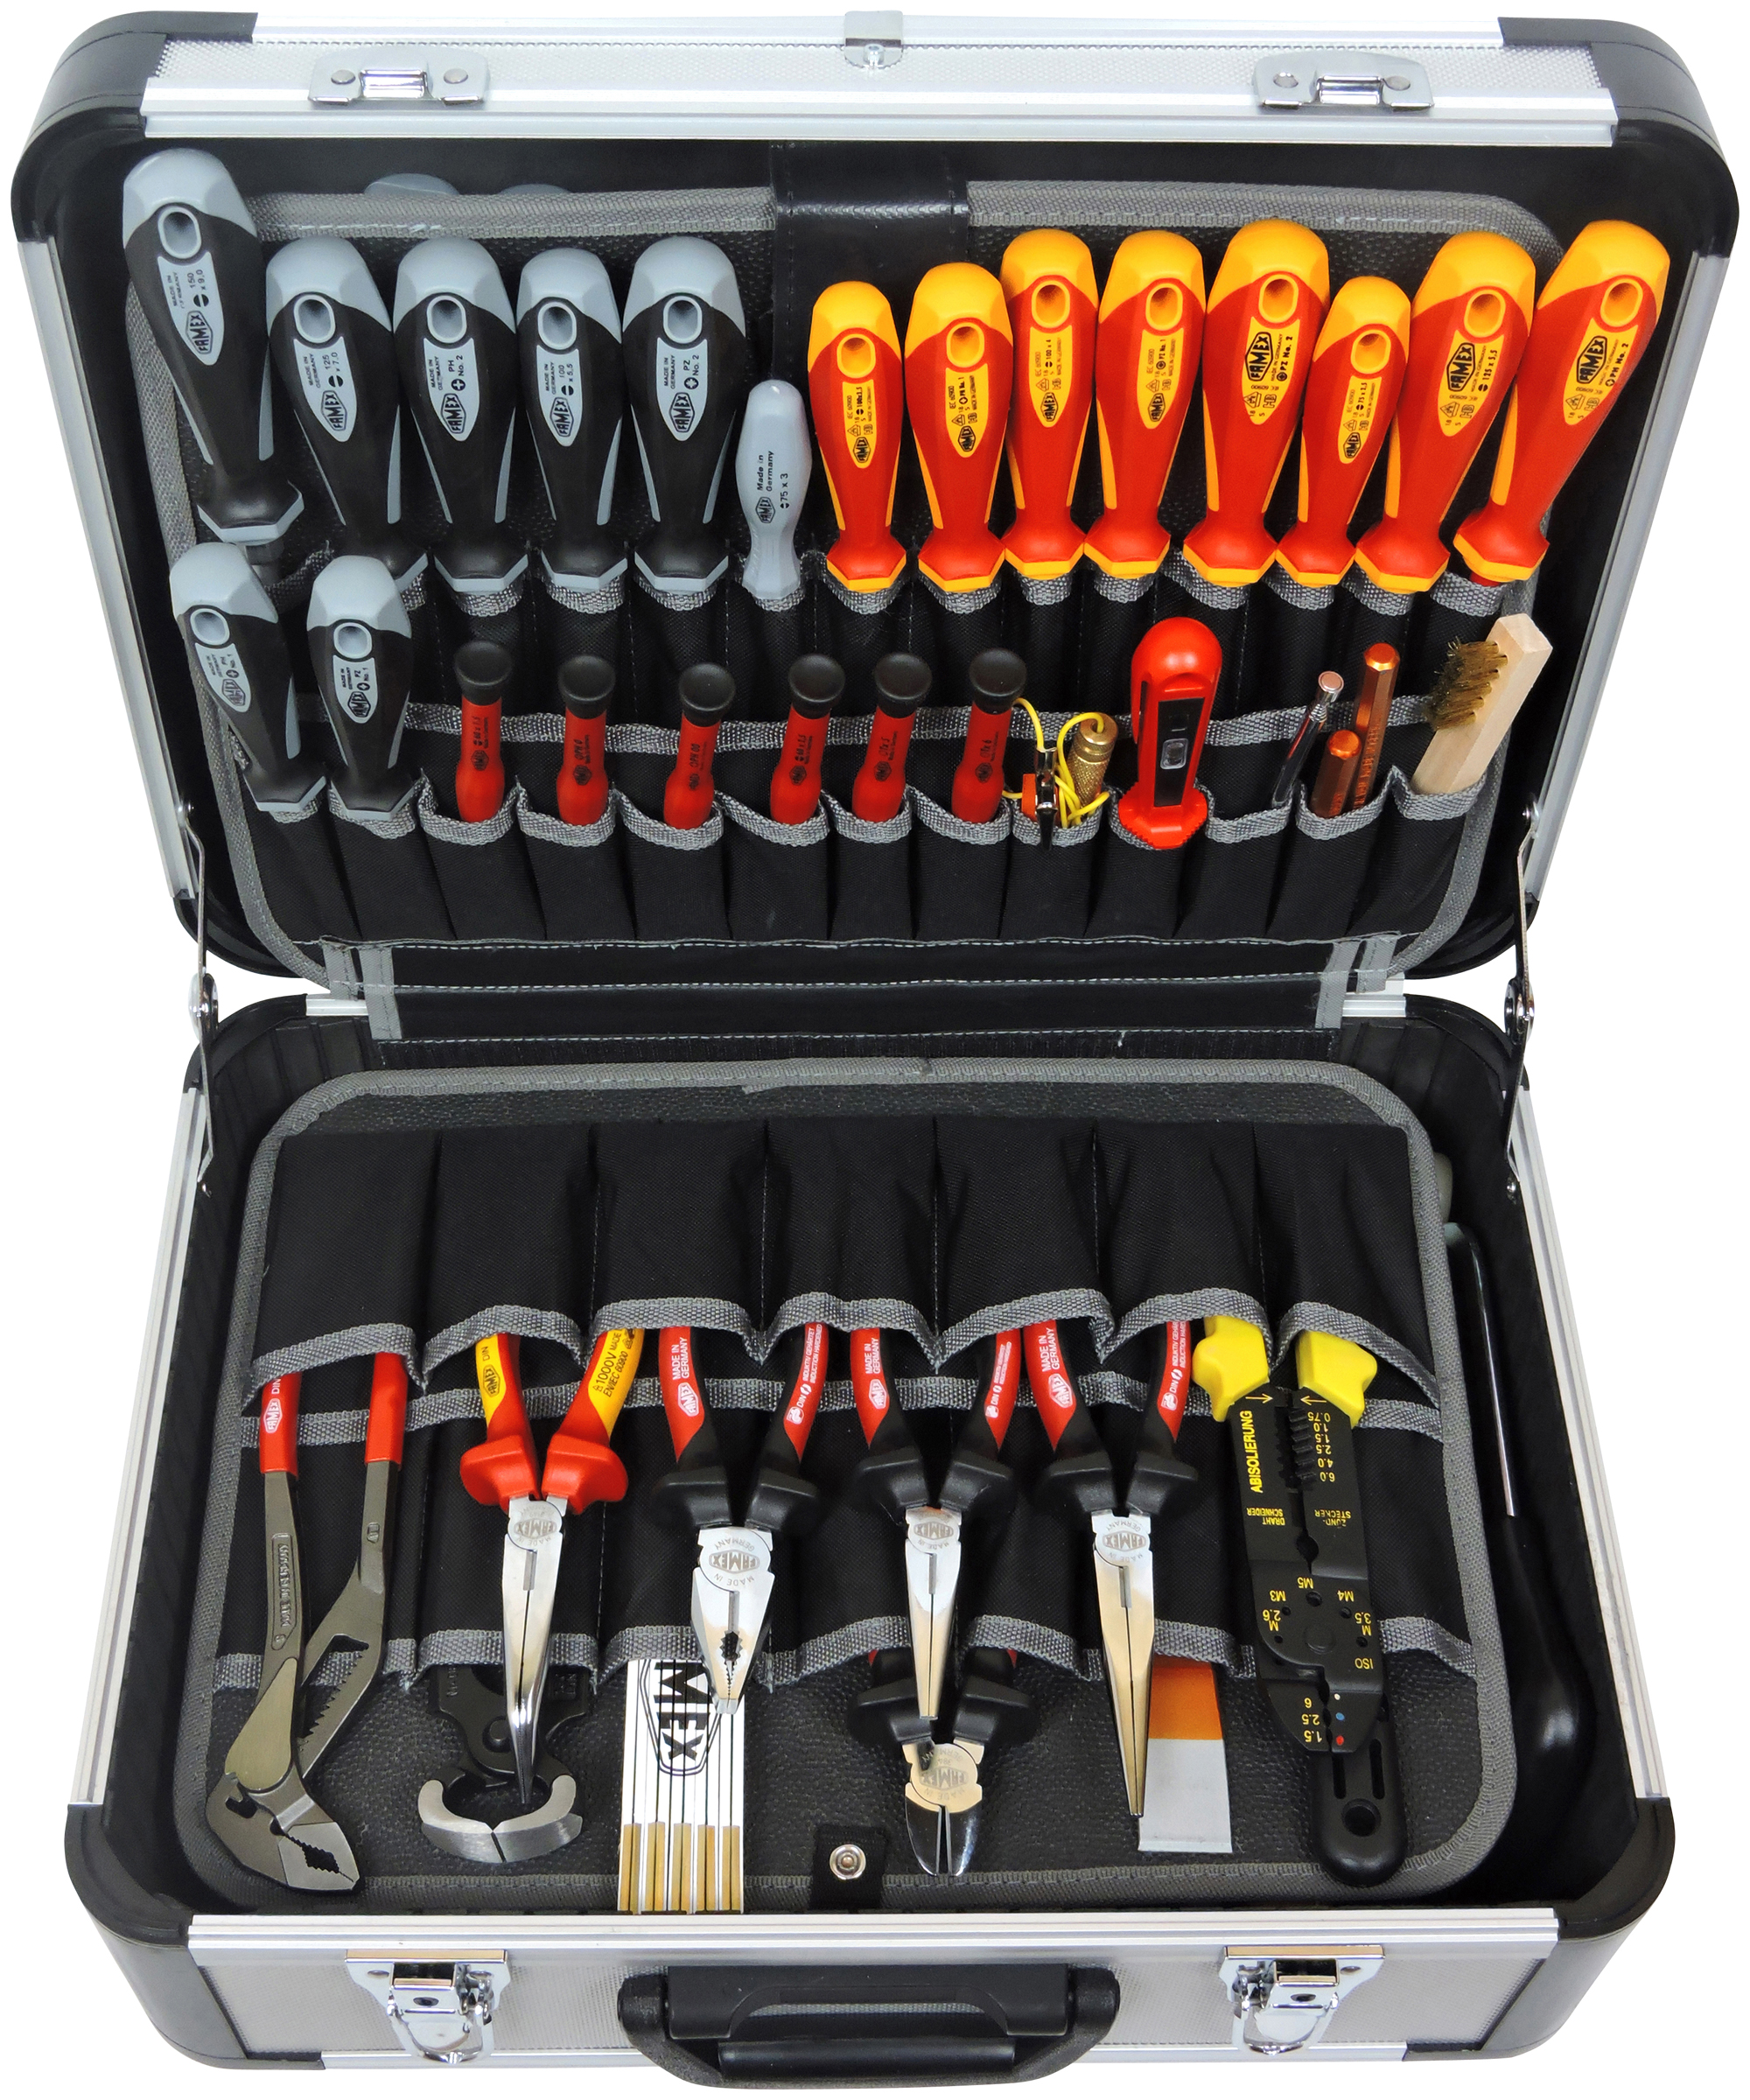 Werkzeuge günstig online kaufen - FAMEX 414-79 Werkzeugkoffer mit High-End  Werkzeugbestückung